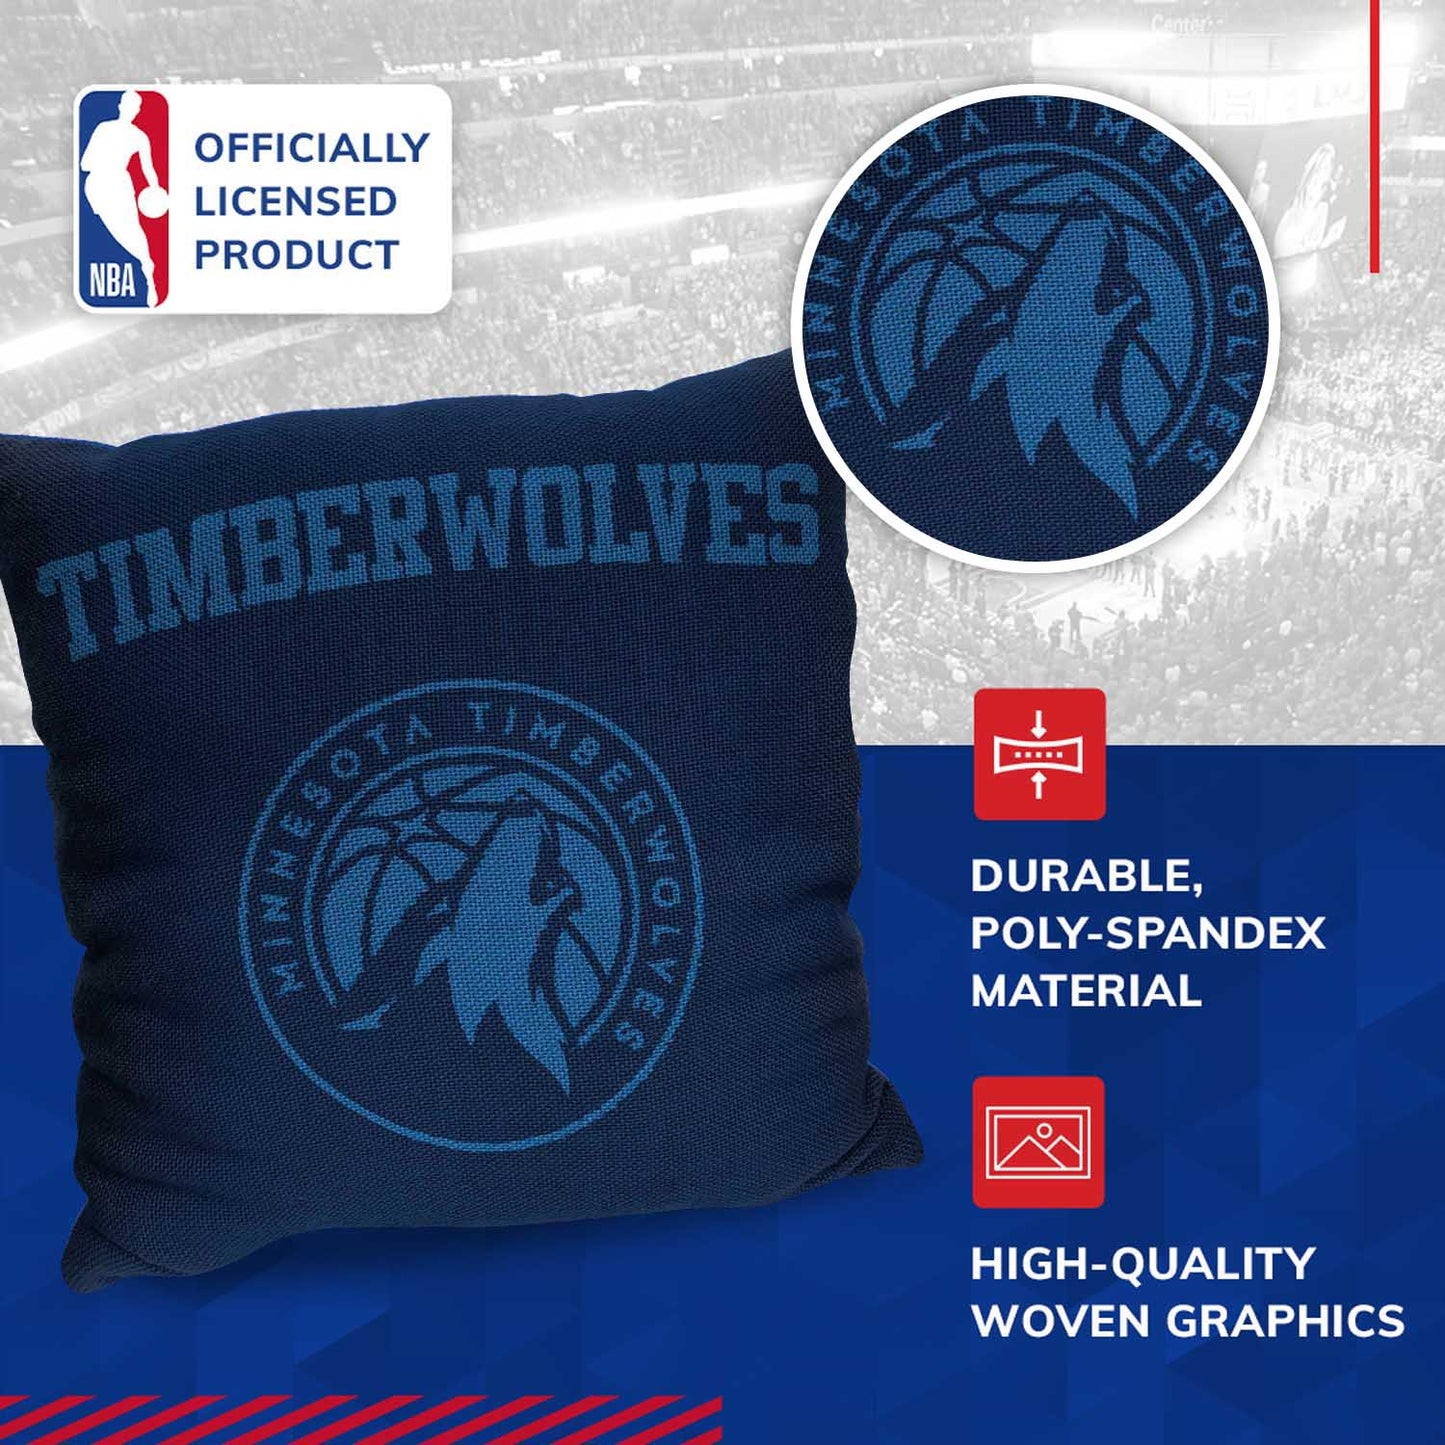 Minnesota Timberwolves NBA Decorative Basketball Throw Pillow - Navy